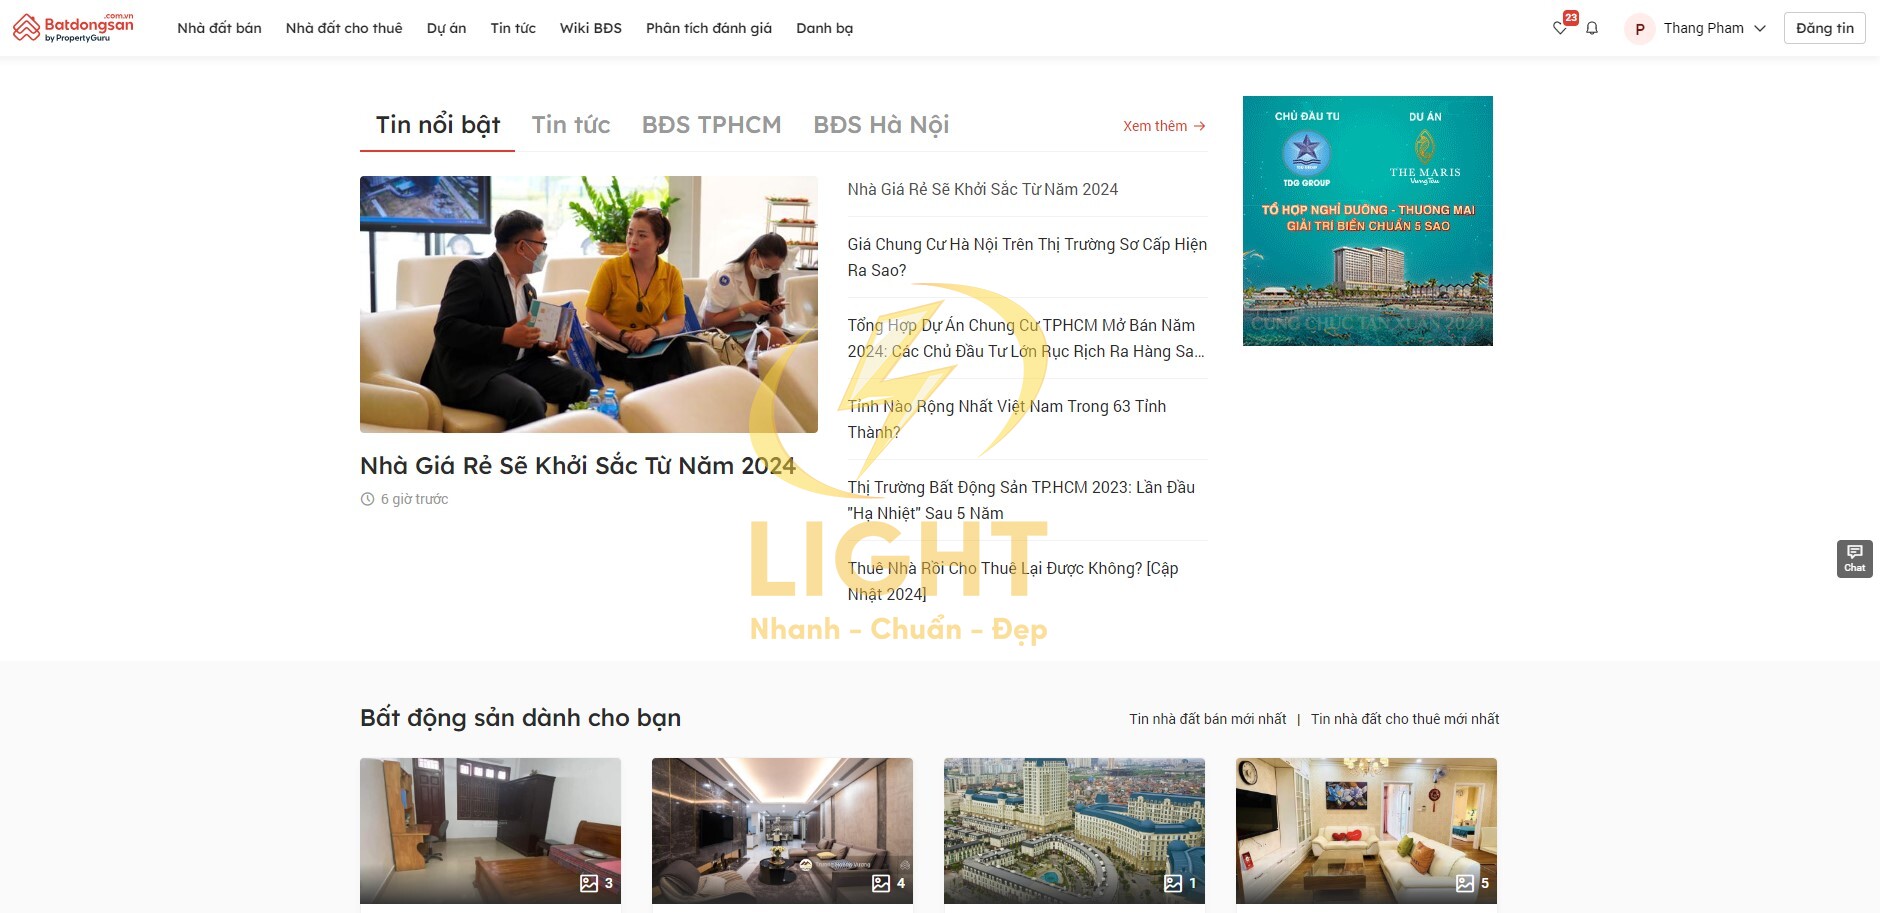 Thiết kế website rao vặt dịch vụ bất động sản của Batdongsan